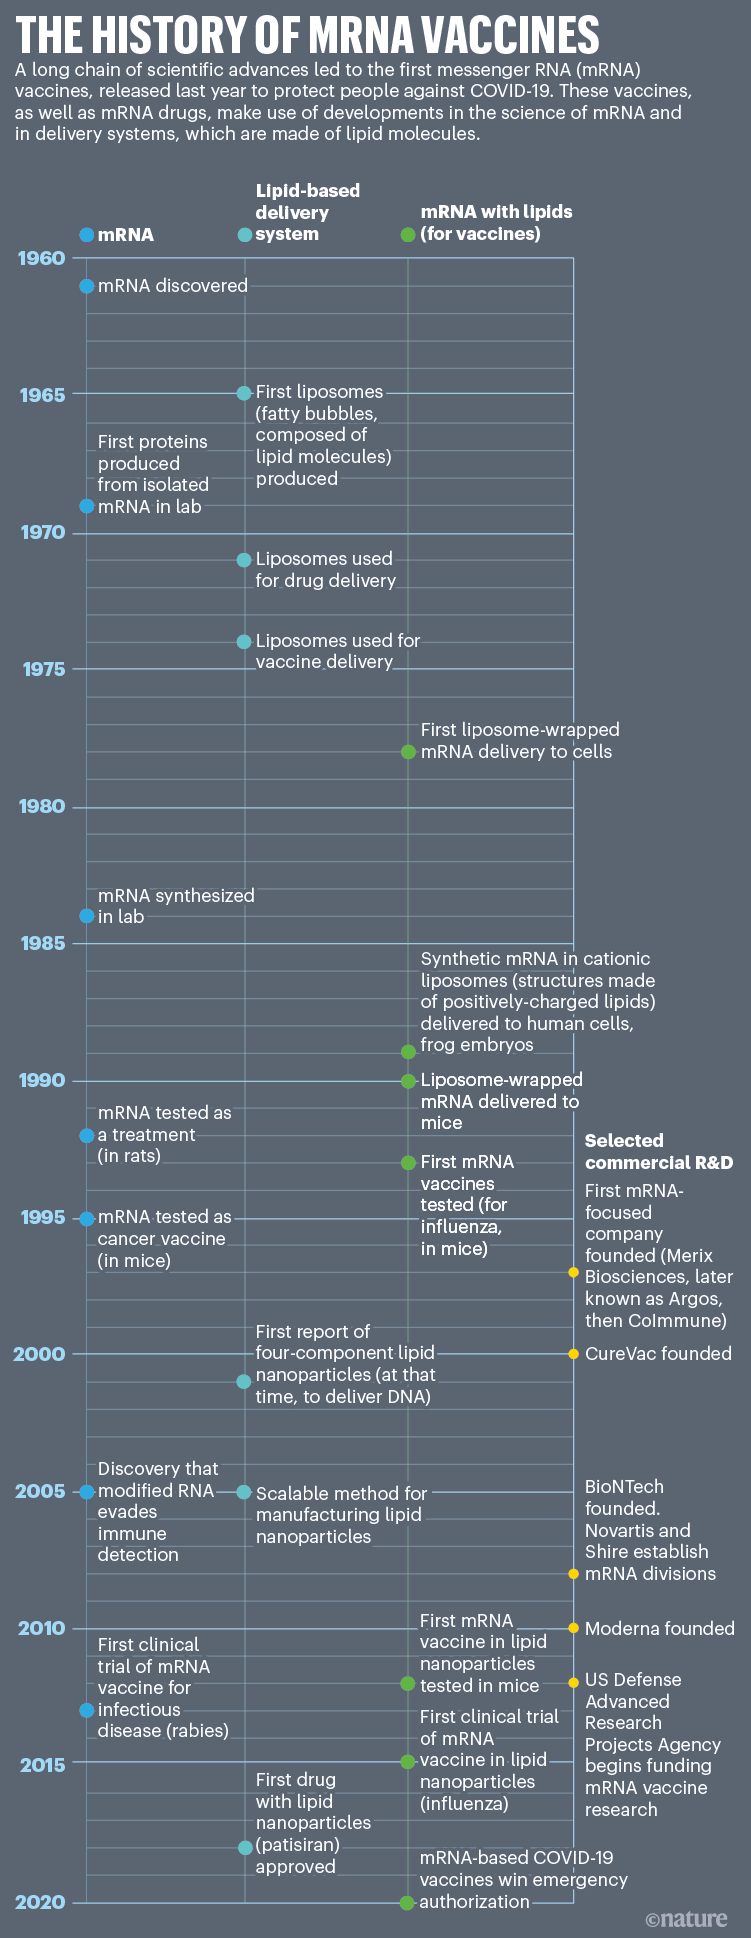 Historie mRNA vakcín: Časová osa, která ukazuje klíčové vědecké inovace ve vývoji mRNA vakcín.